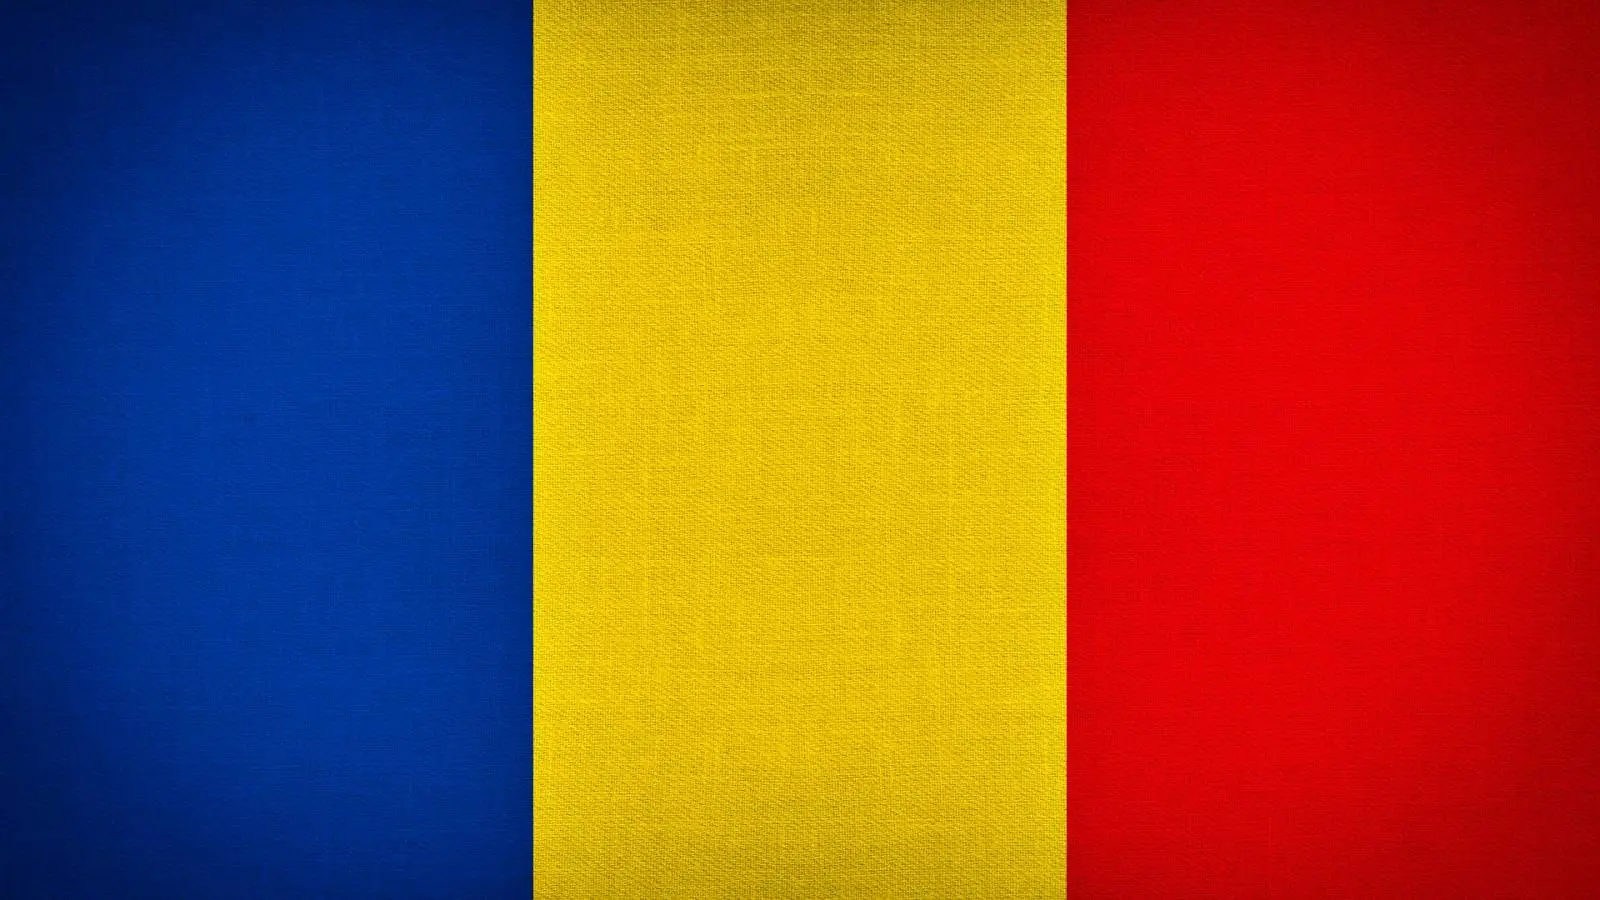 Rumænien Last Minute-meddelelse Problem bekymrer millioner af mennesker